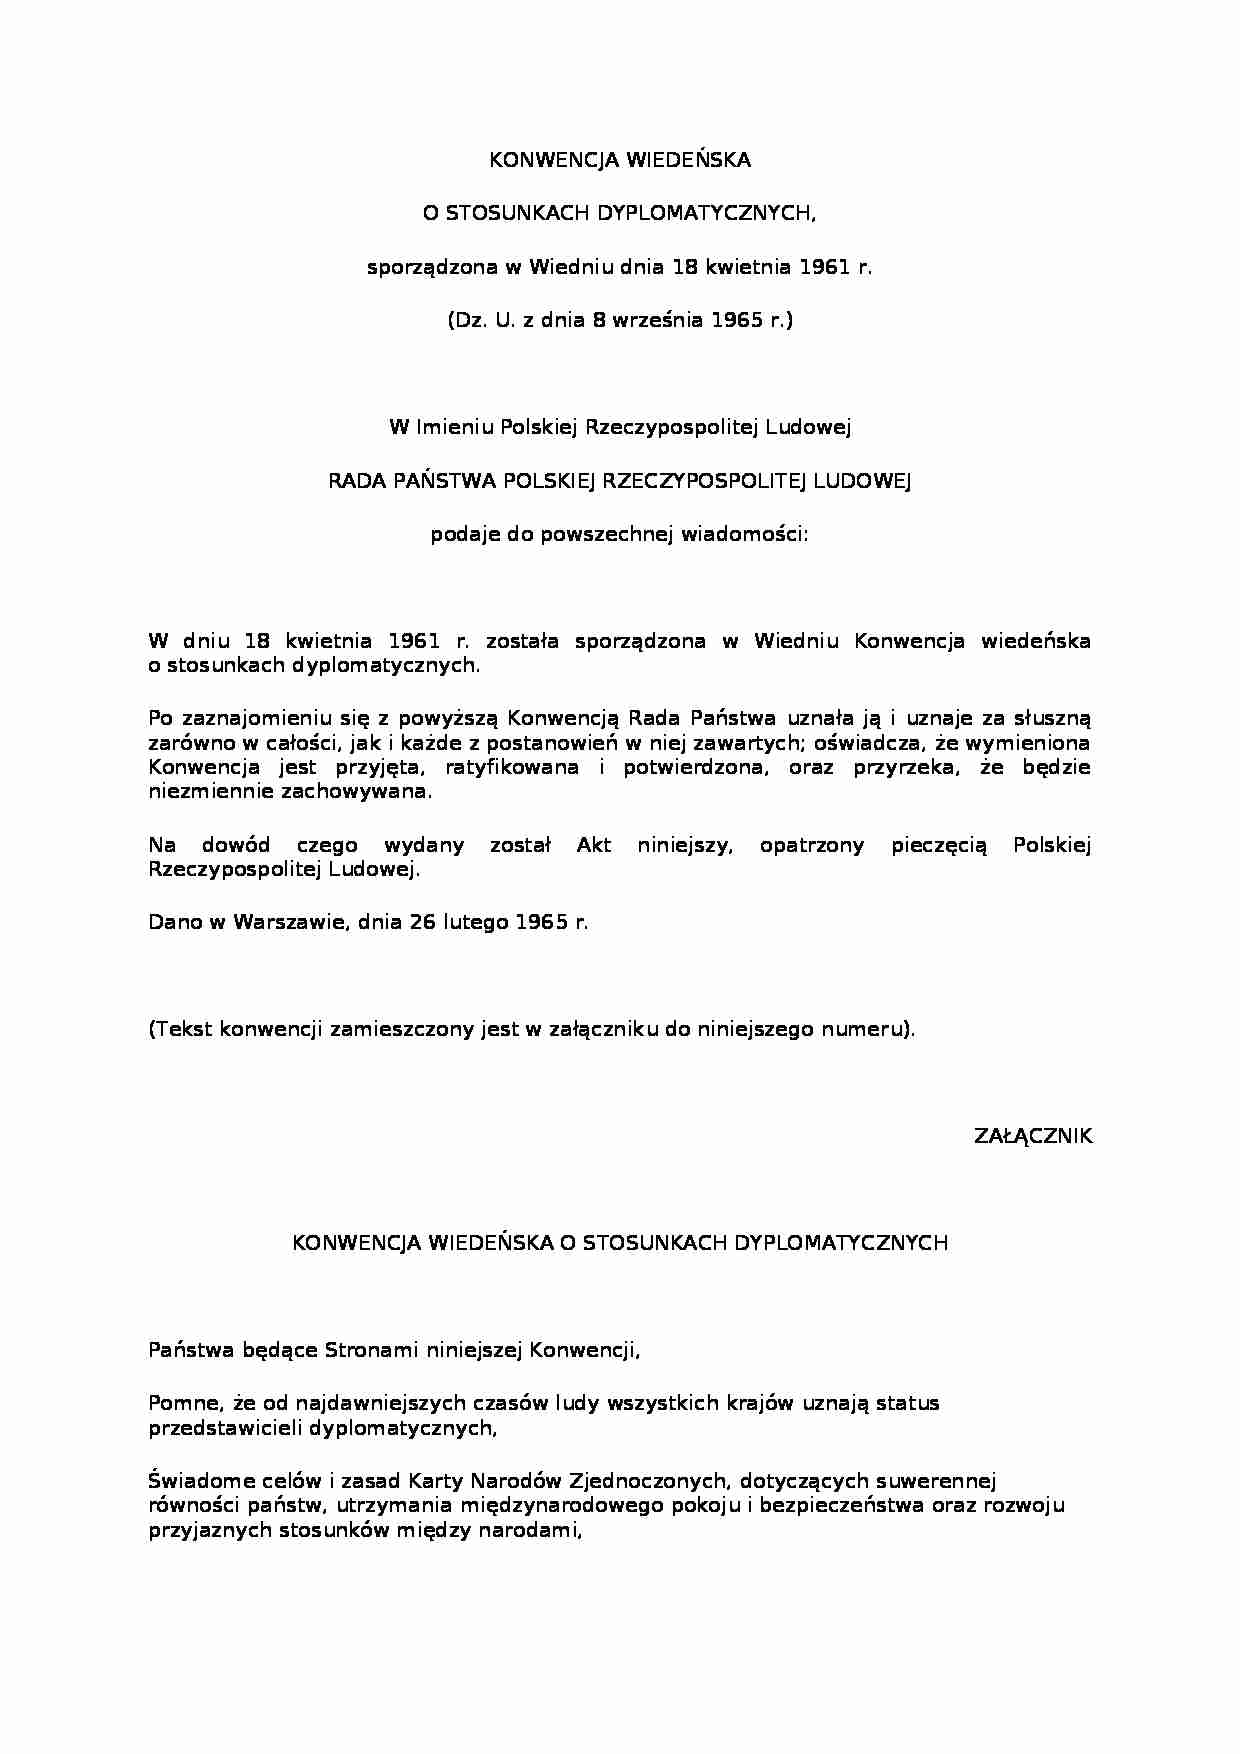 Konwencja wiedeńska o stosunkach dyplomatycznych - Karta  Narodów Zjednoczonych, - strona 1